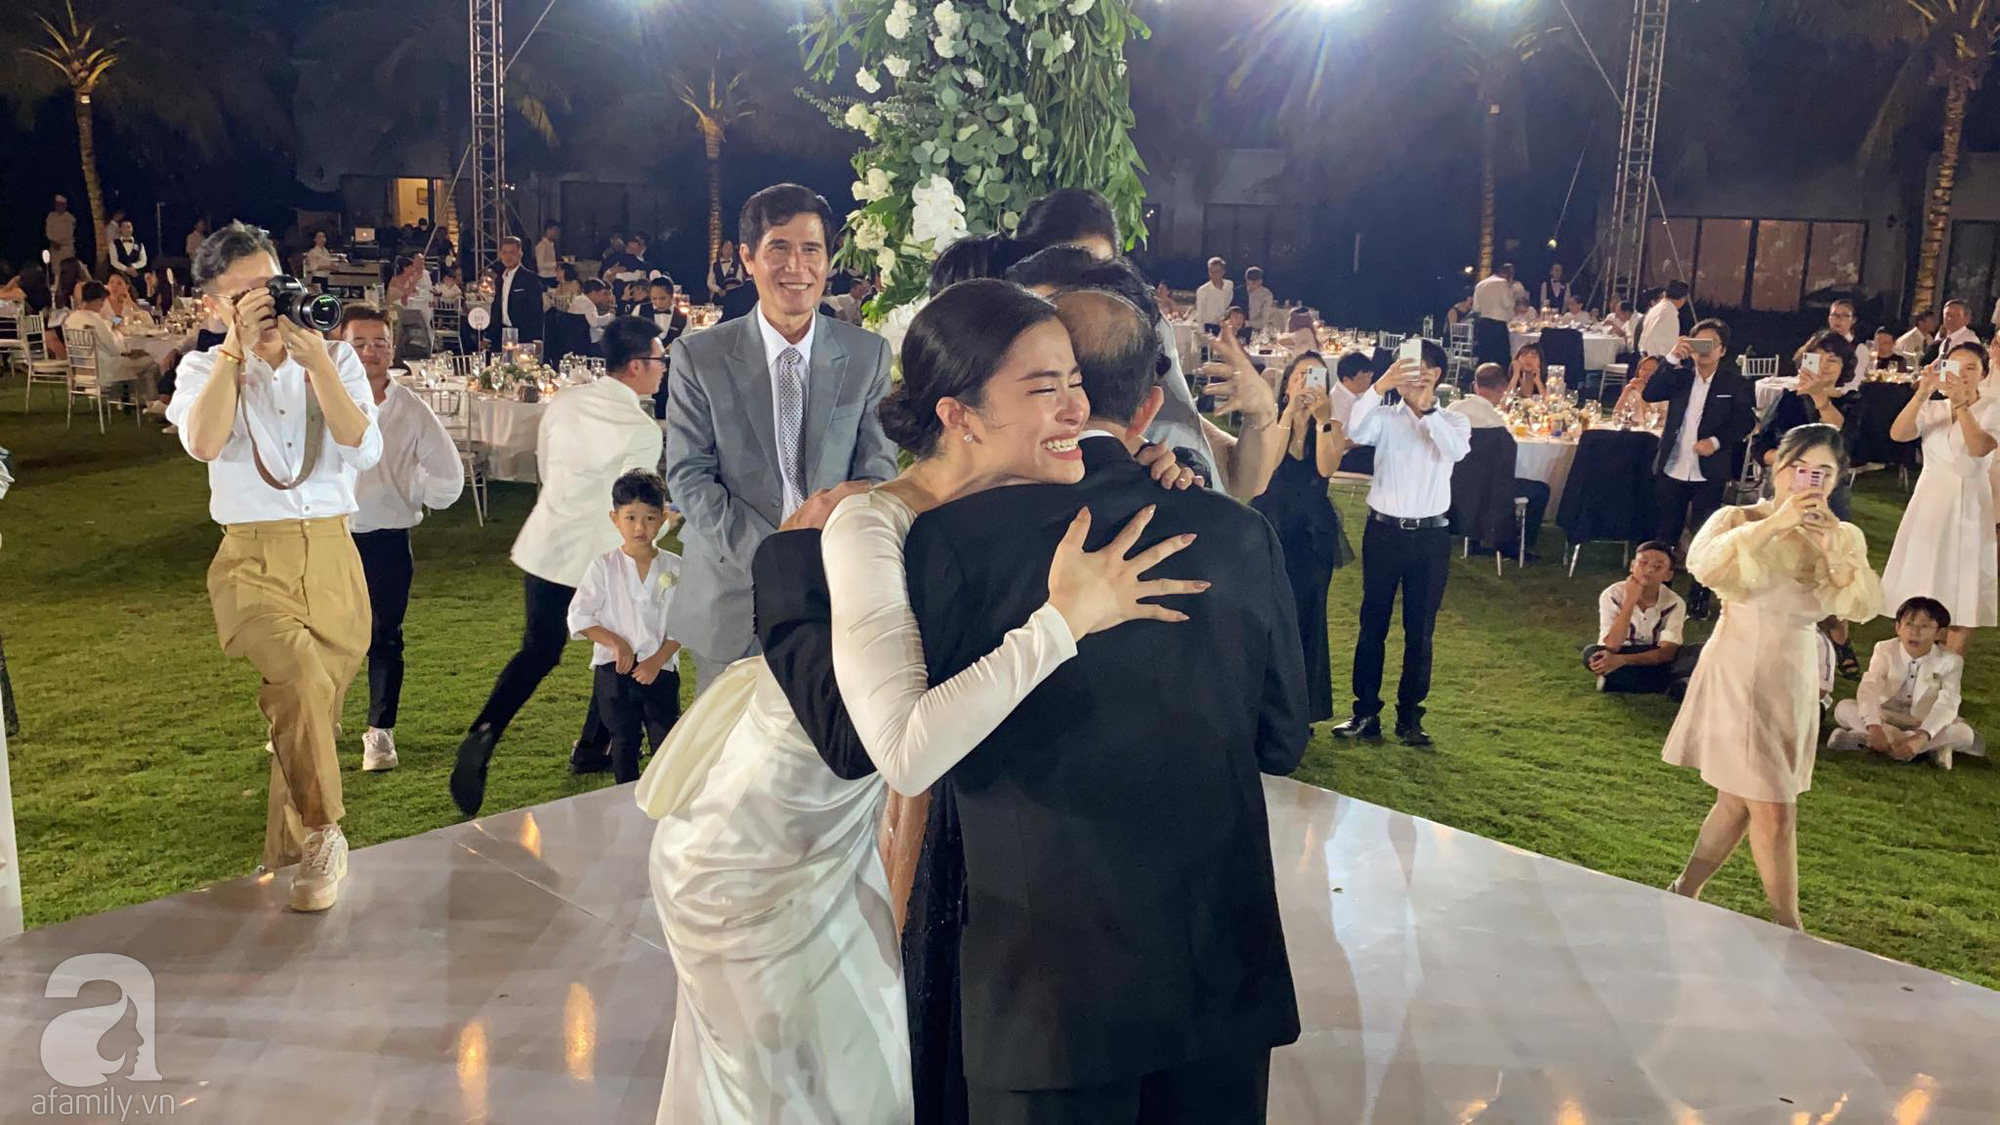 Toàn cảnh đám cưới siêu thế kỷ của Đông Nhi và Ông Cao Thắng: Cô dâu chú rể khóc hết nước mắt khi nhảy cùng bố mẹ hai bên - Ảnh 75.